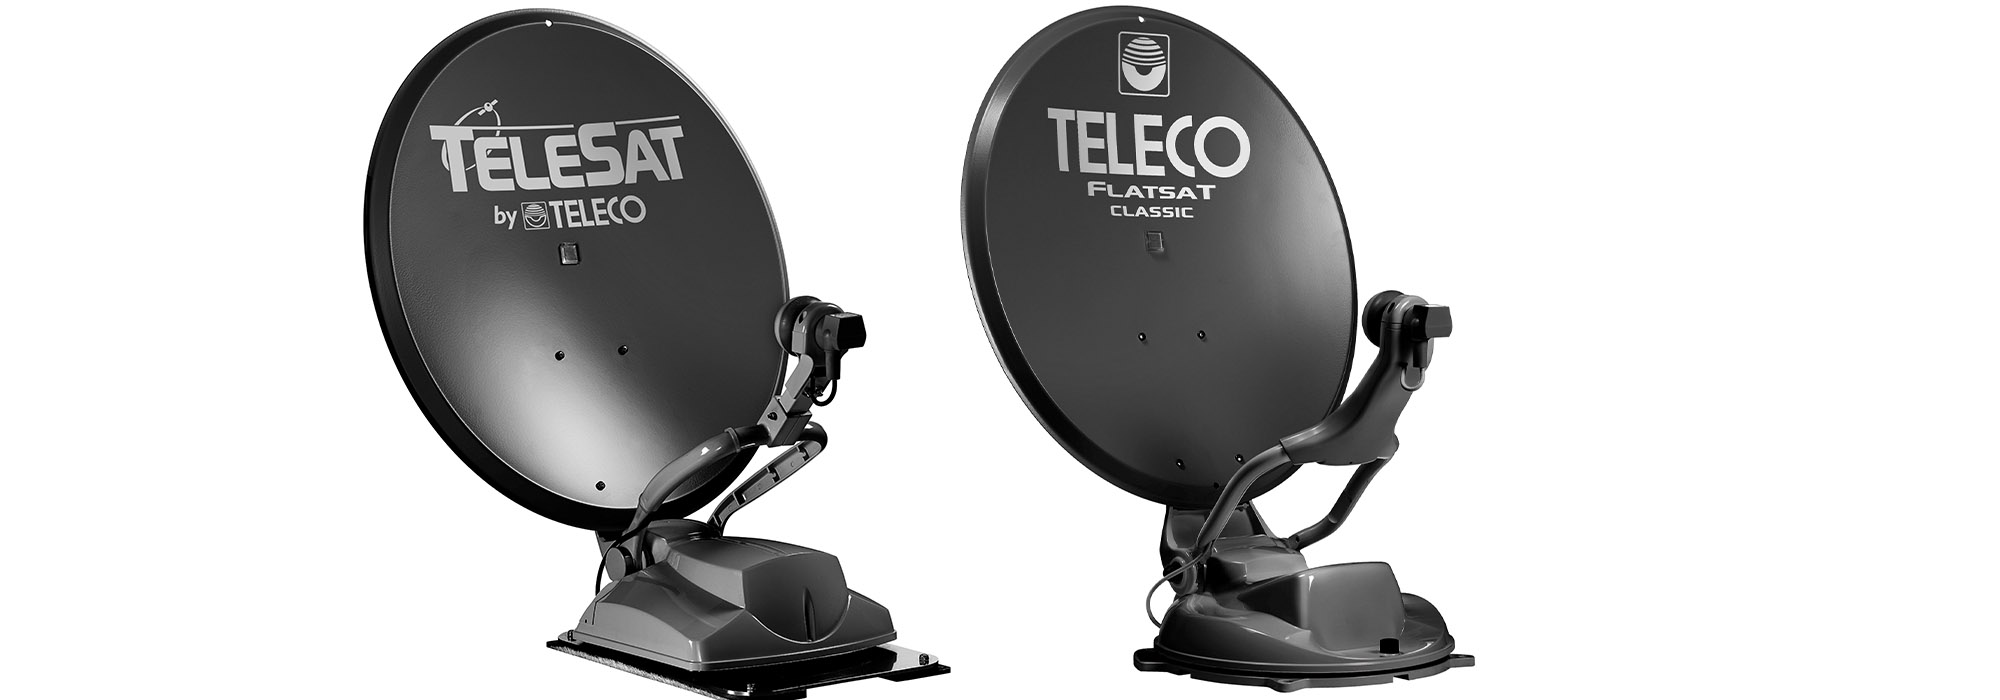 La gamme Total Black de Teleco s'enrichit avec les antennes automatiques Flatsat Classic BT 65 et Telesat BT 65